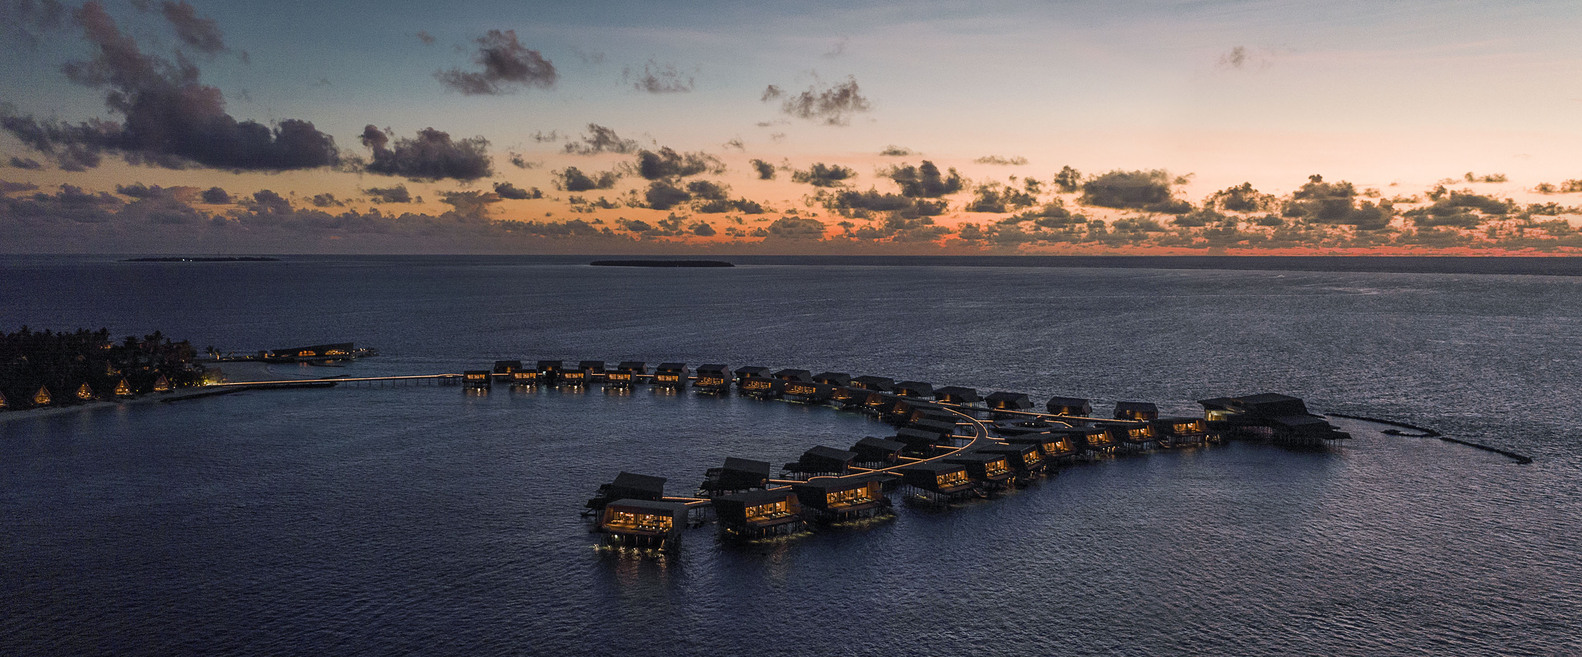 Wamuririgi resort, Maldives_ Architecture